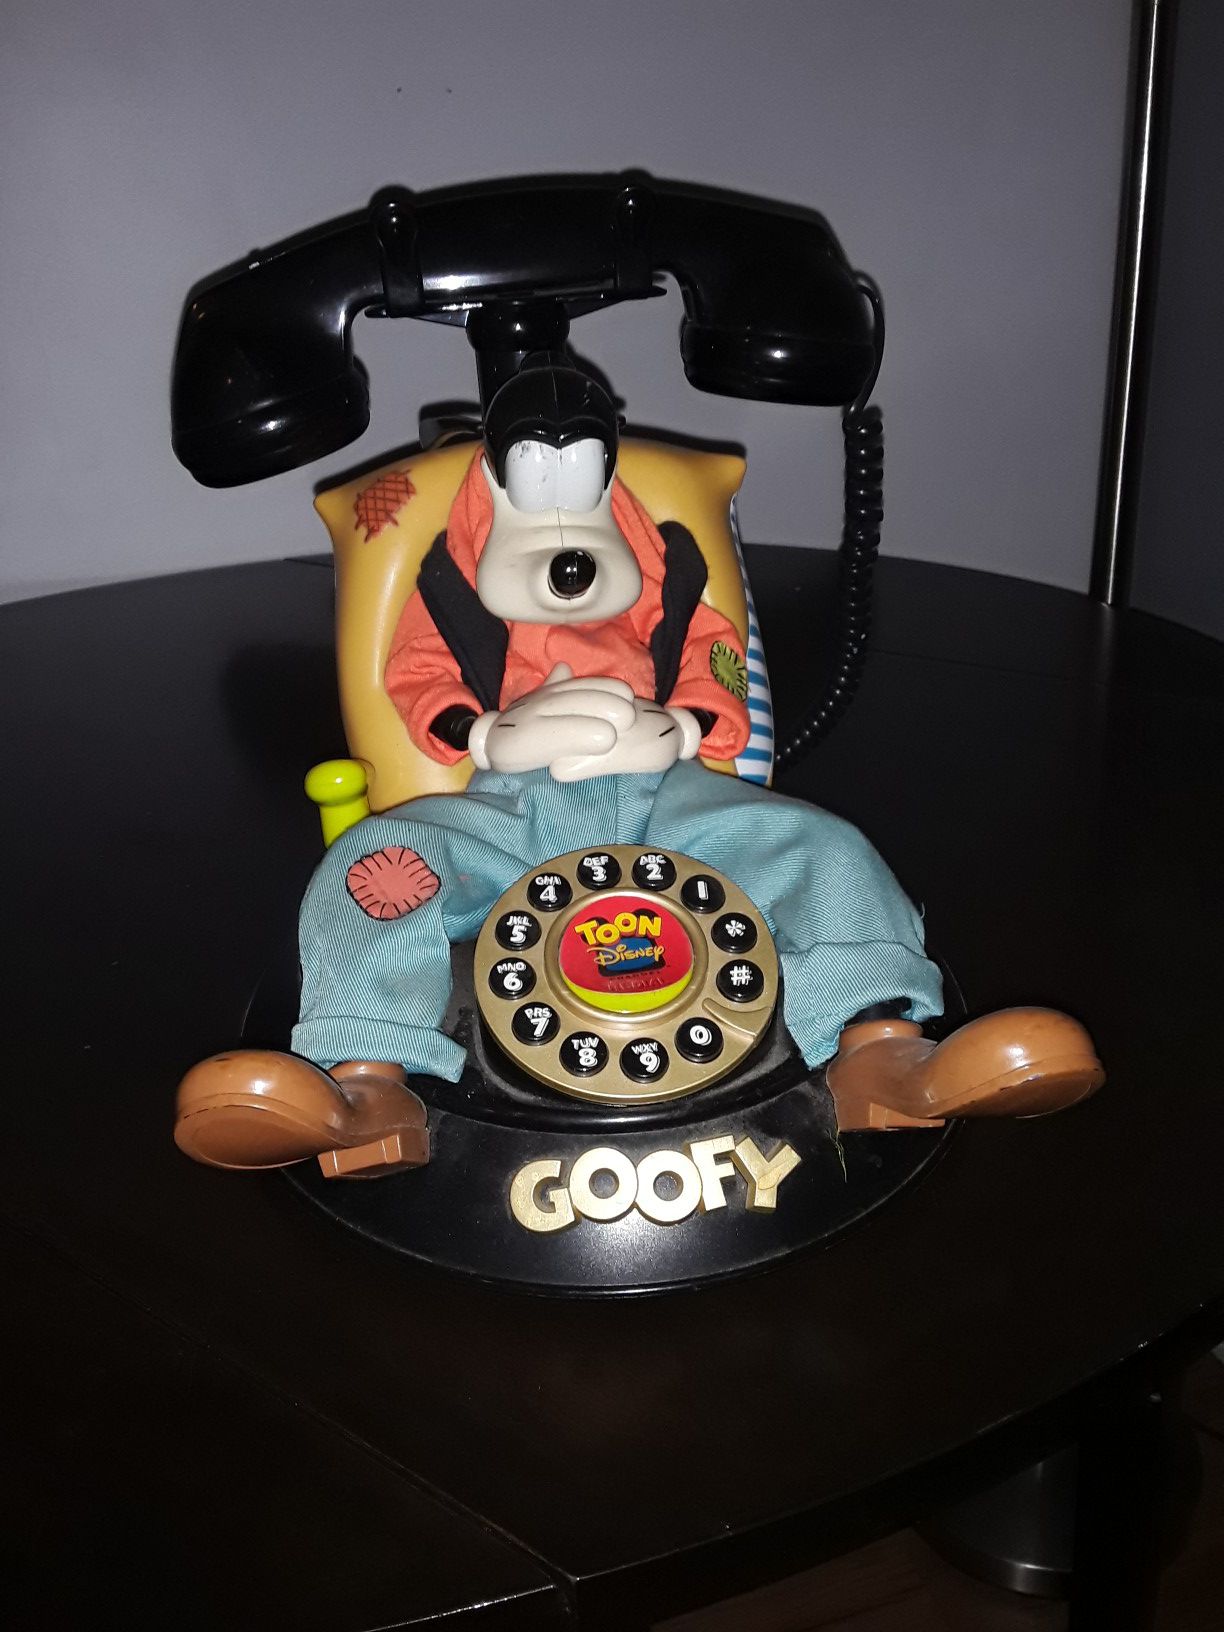 Disney toon Goofy telephone